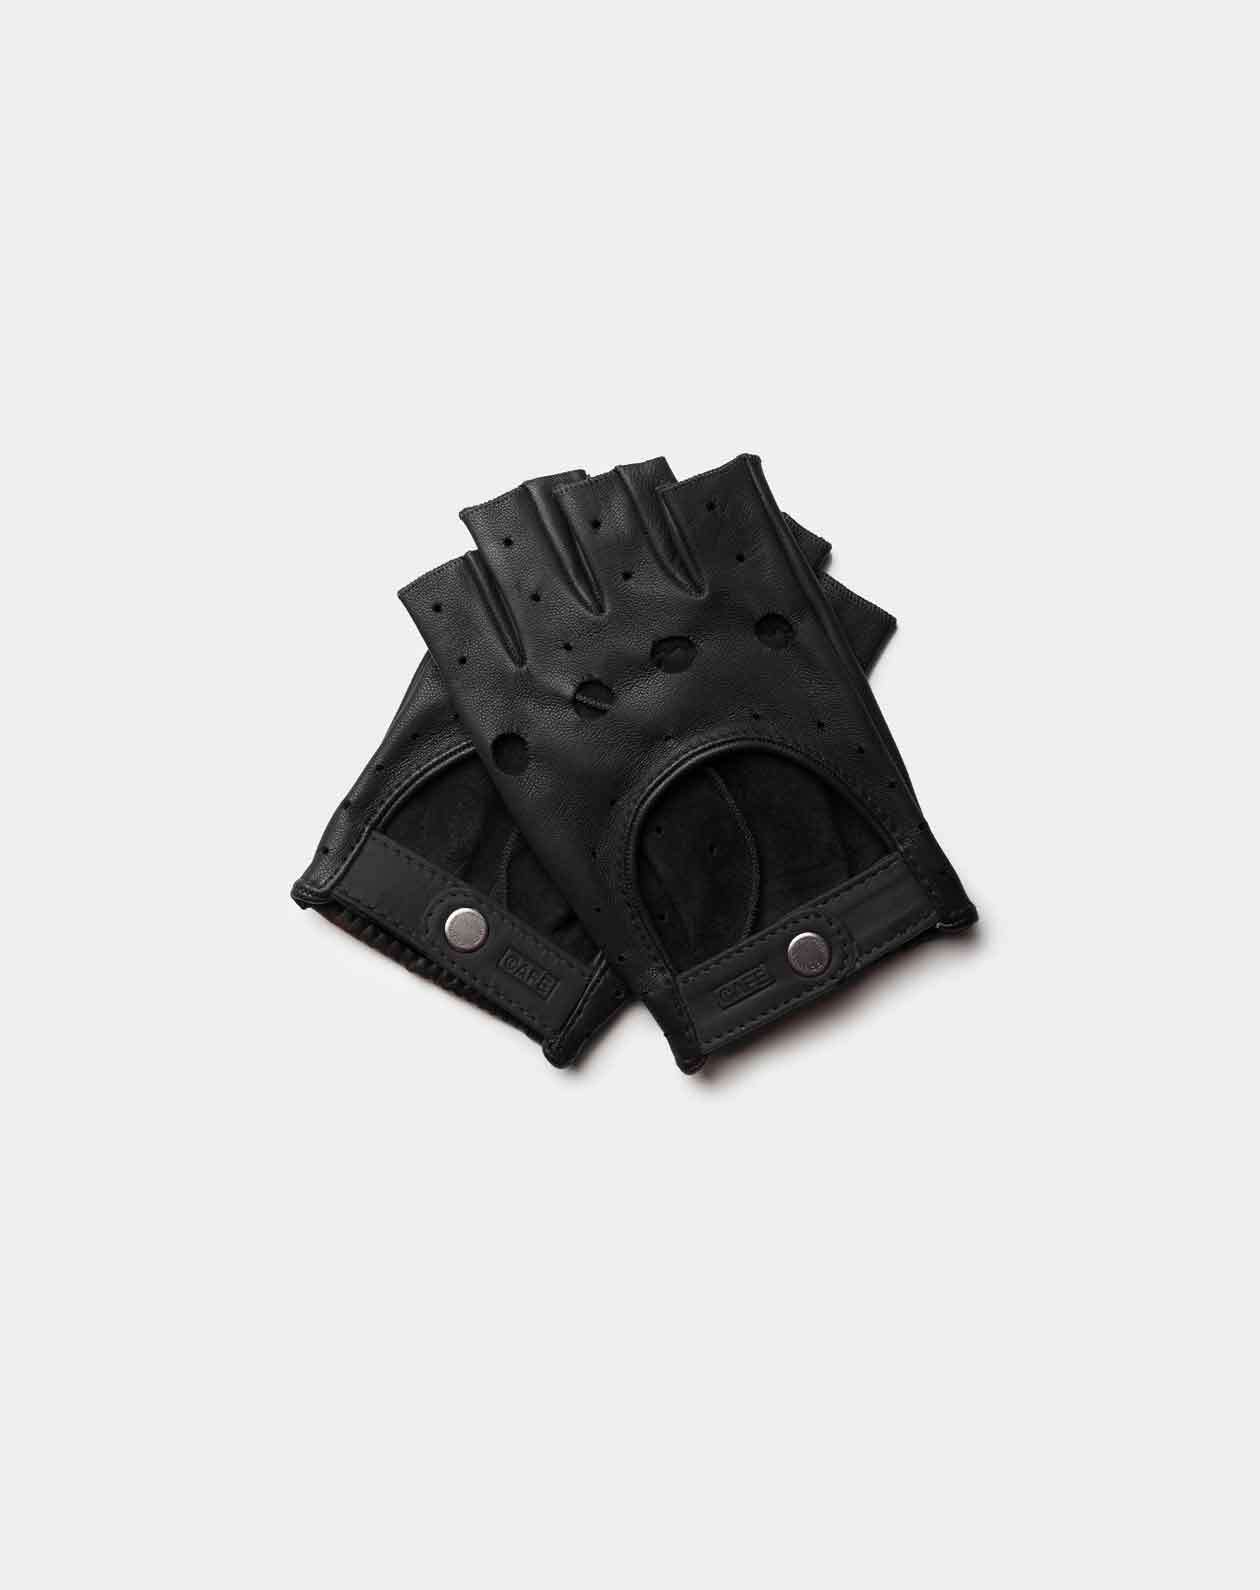 fingerless driving gloves all black front